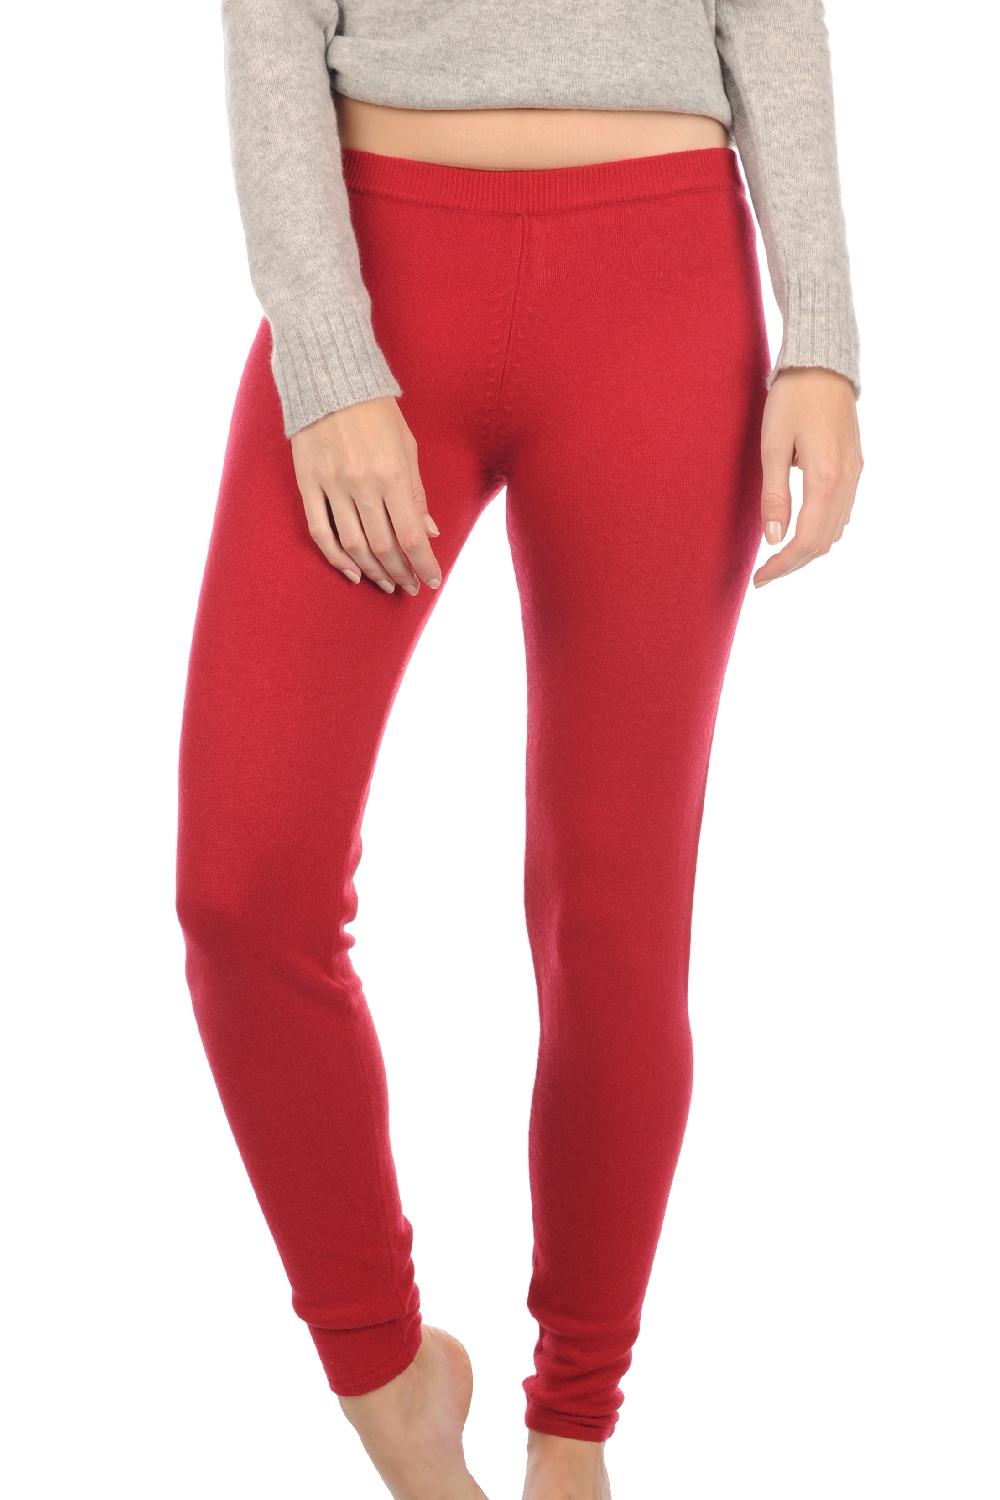 Cashmere cashmere donna pantaloni leggings xelina rosso rubino m